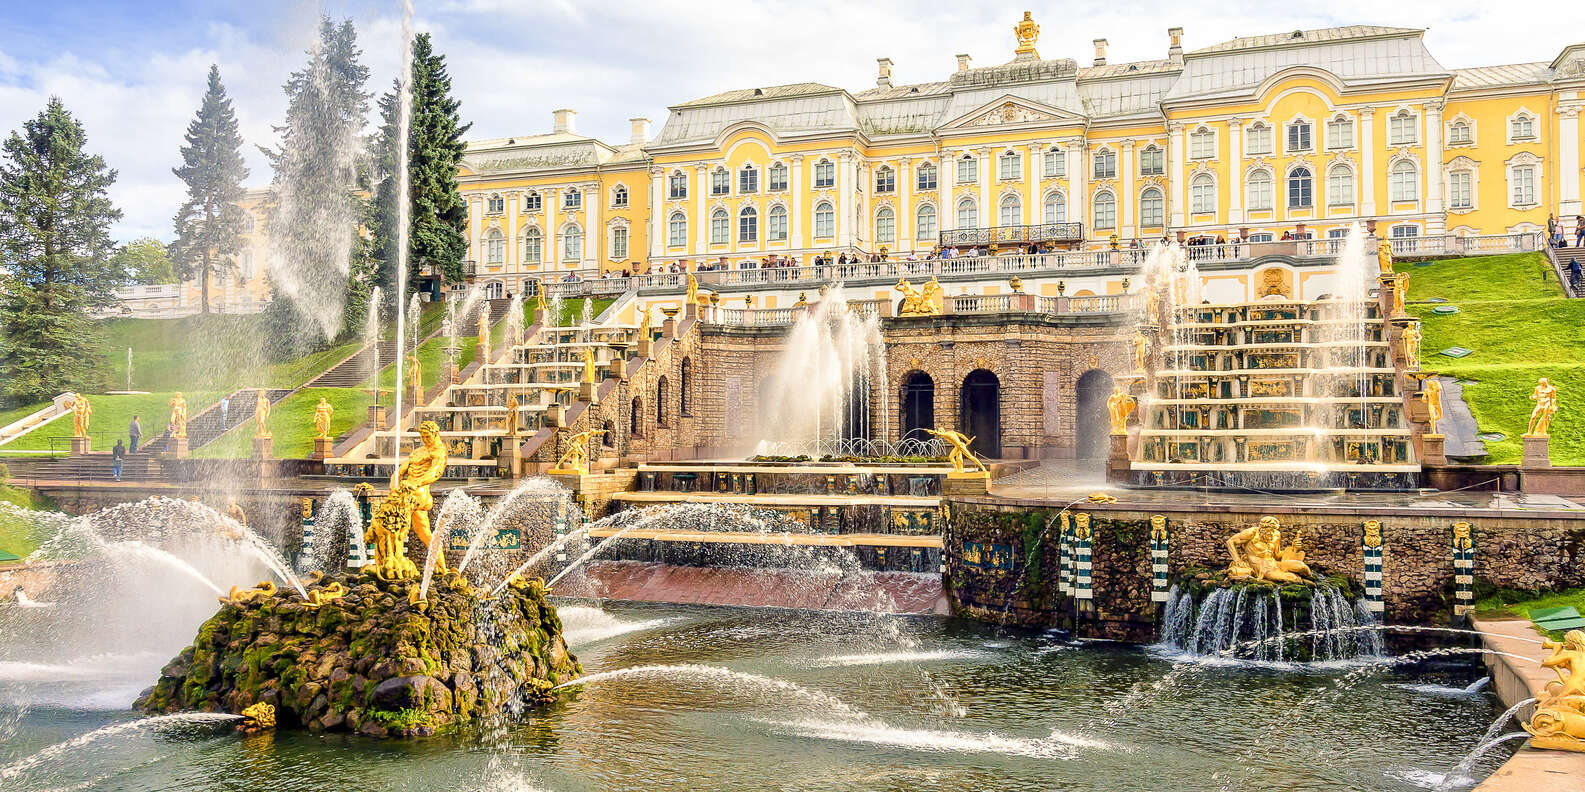 ۱۰. کاخ پترهوف، از زیباترین کاخ های جهان